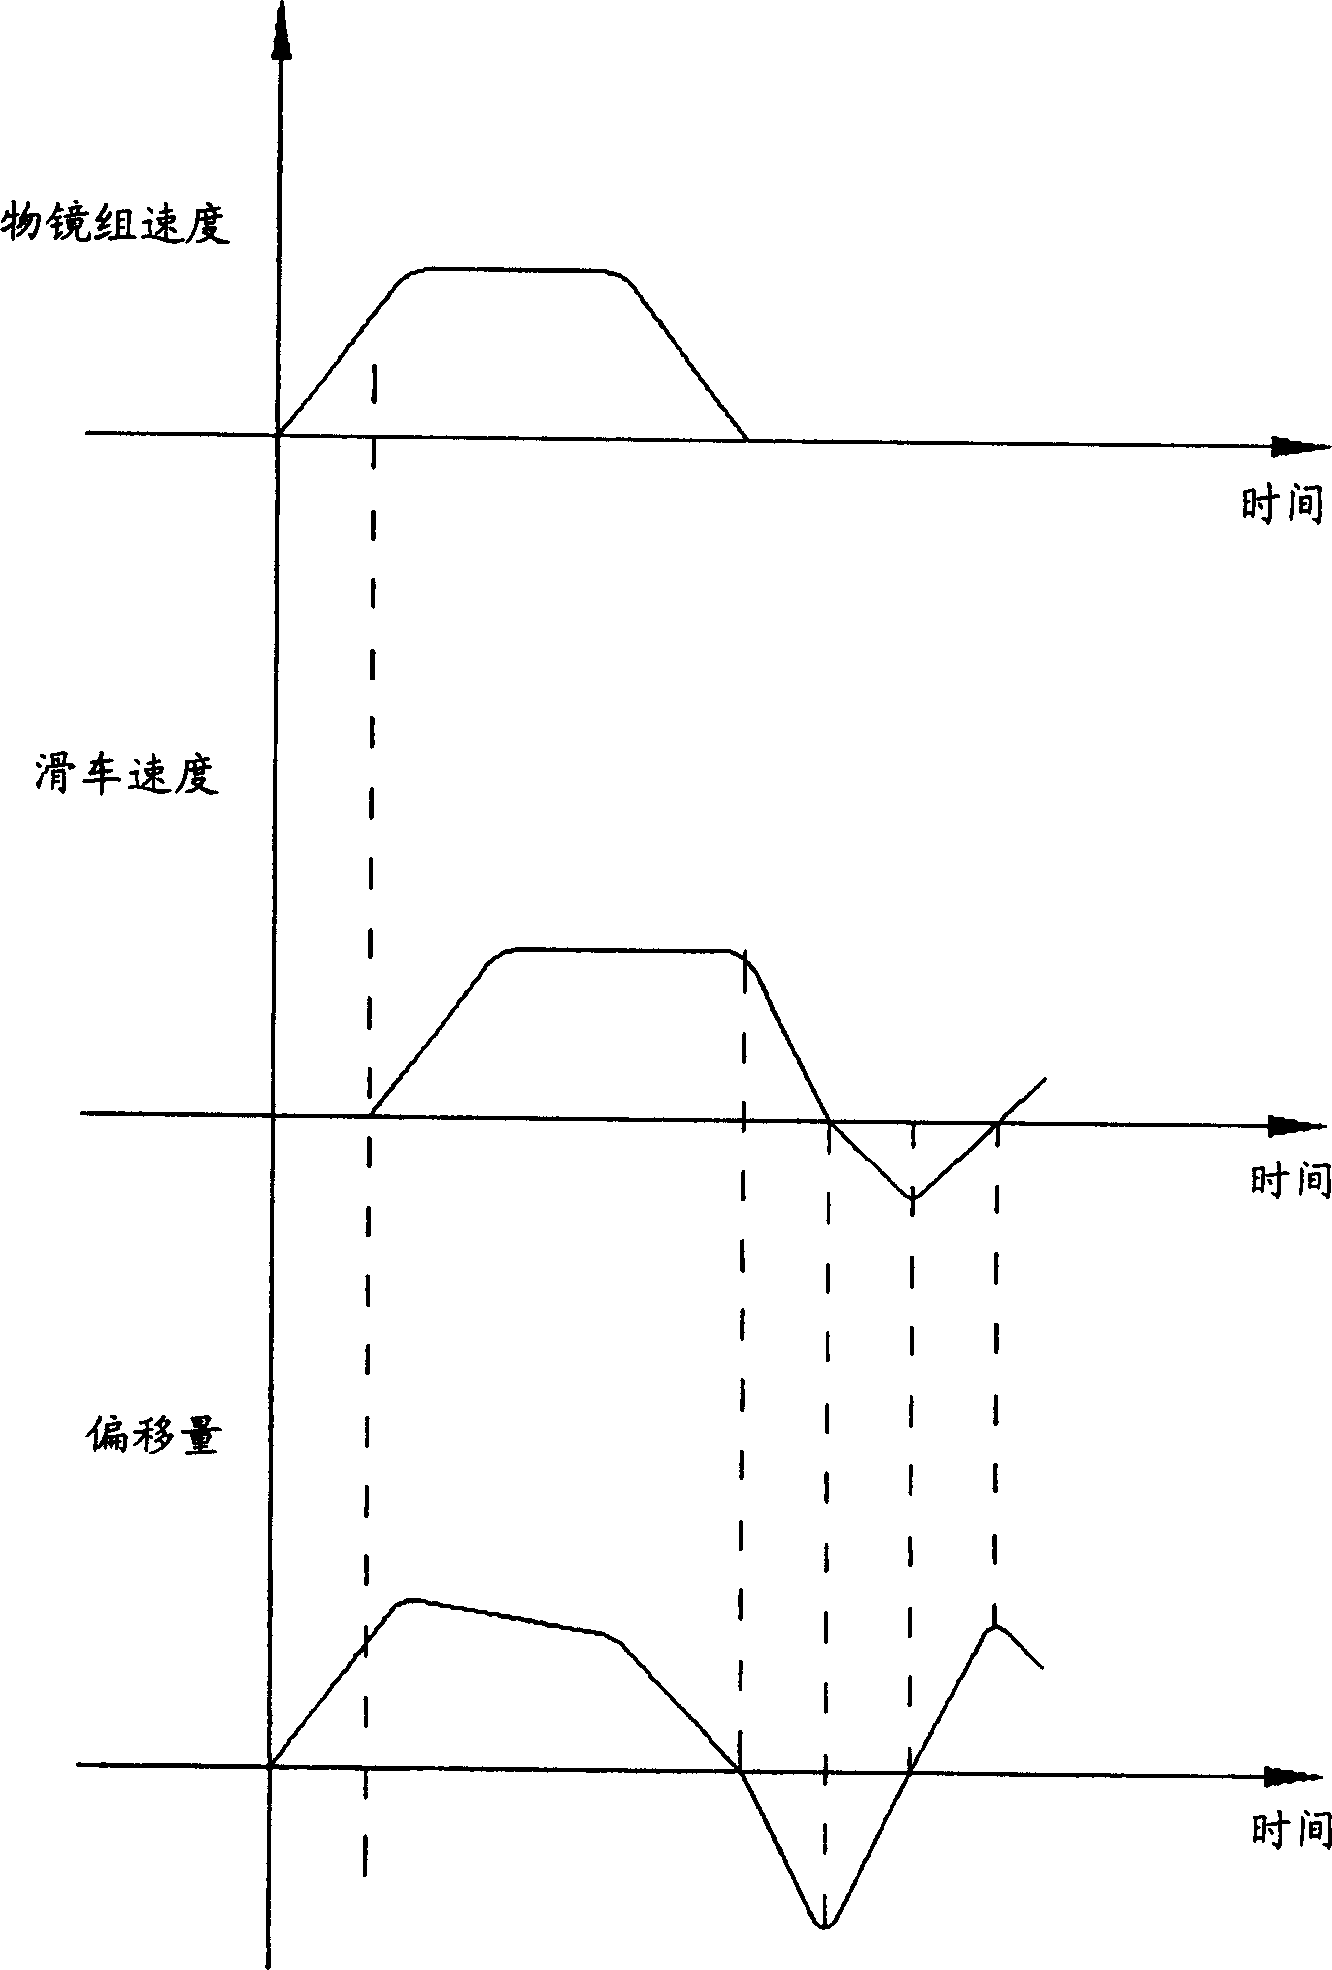 Method for realizing short gauge jumping rail through employing step motor